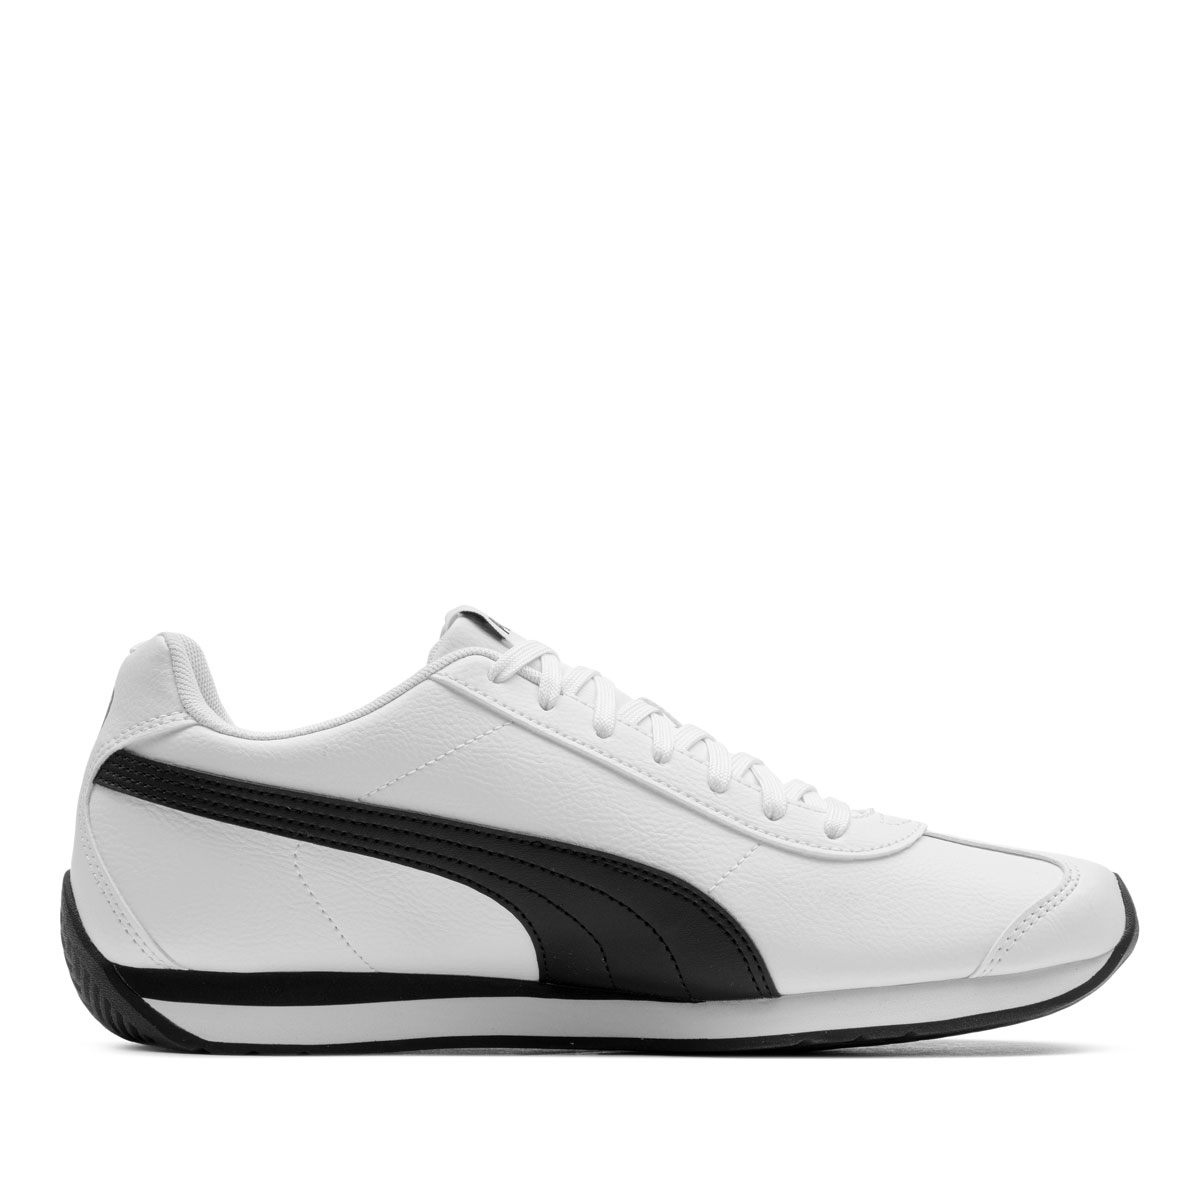 Puma Turin 3 Мъжки спортни обувки 383037-06